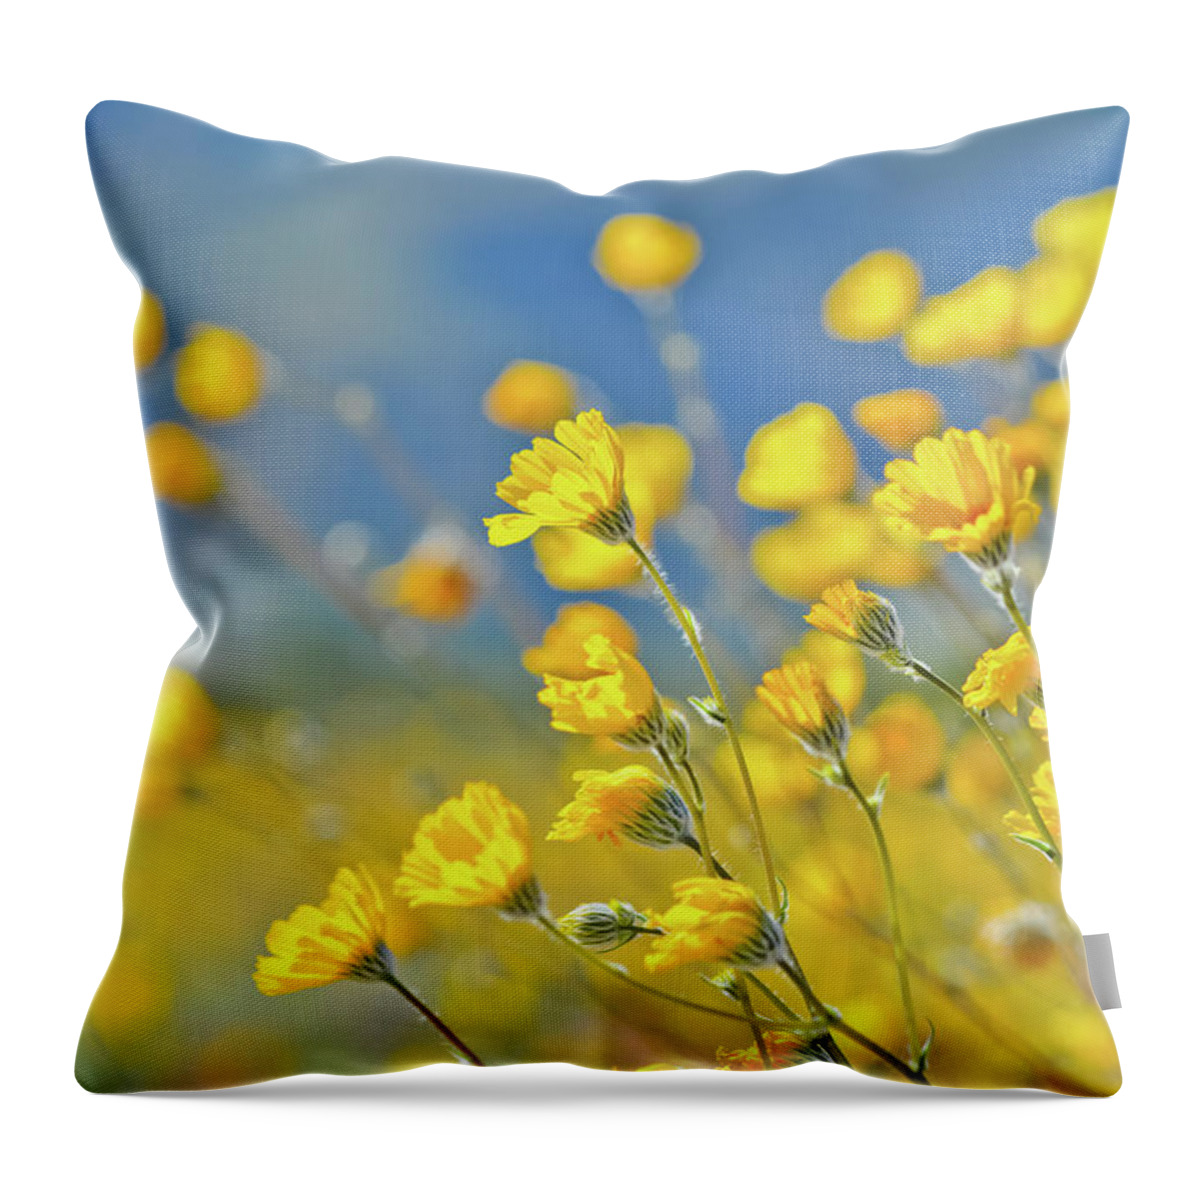 Desert Sunflower Throw Pillow featuring the photograph Anza Borrego Desert Sunflower by Kyle Hanson